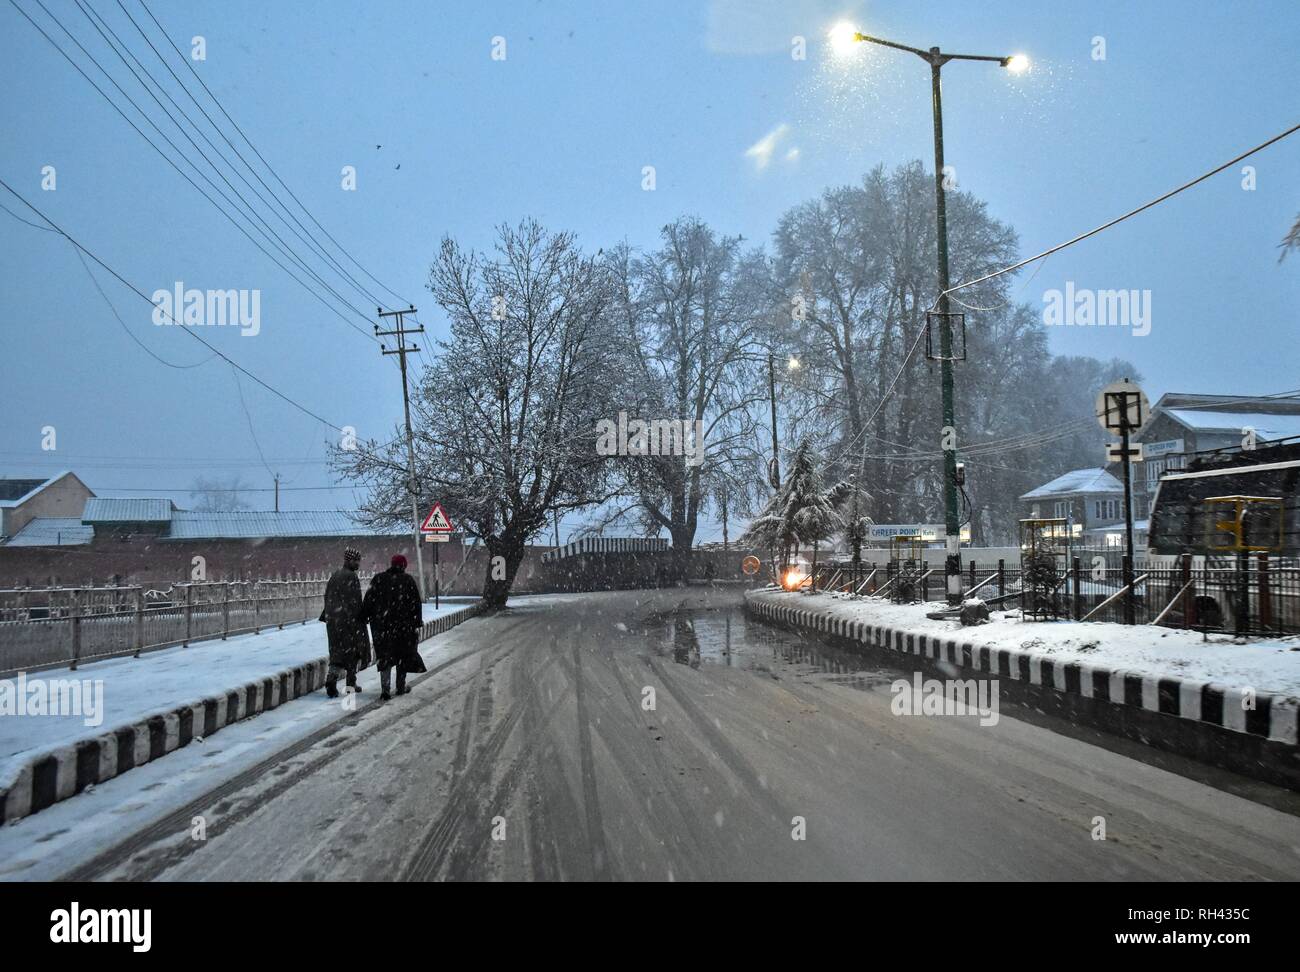 Bewohner gesehen zu Fuß durch den Schnee Straße während Schneefall in Srinagar, Indien verwalteten Kaschmir abgedeckt. Schneefall peitschten die meisten Teile des Kaschmir Valley als minimale Temperaturen über den Gefrierpunkt stieg. Das Wetter Männer Prognose Verbesserungen in Wetter. Stockfoto